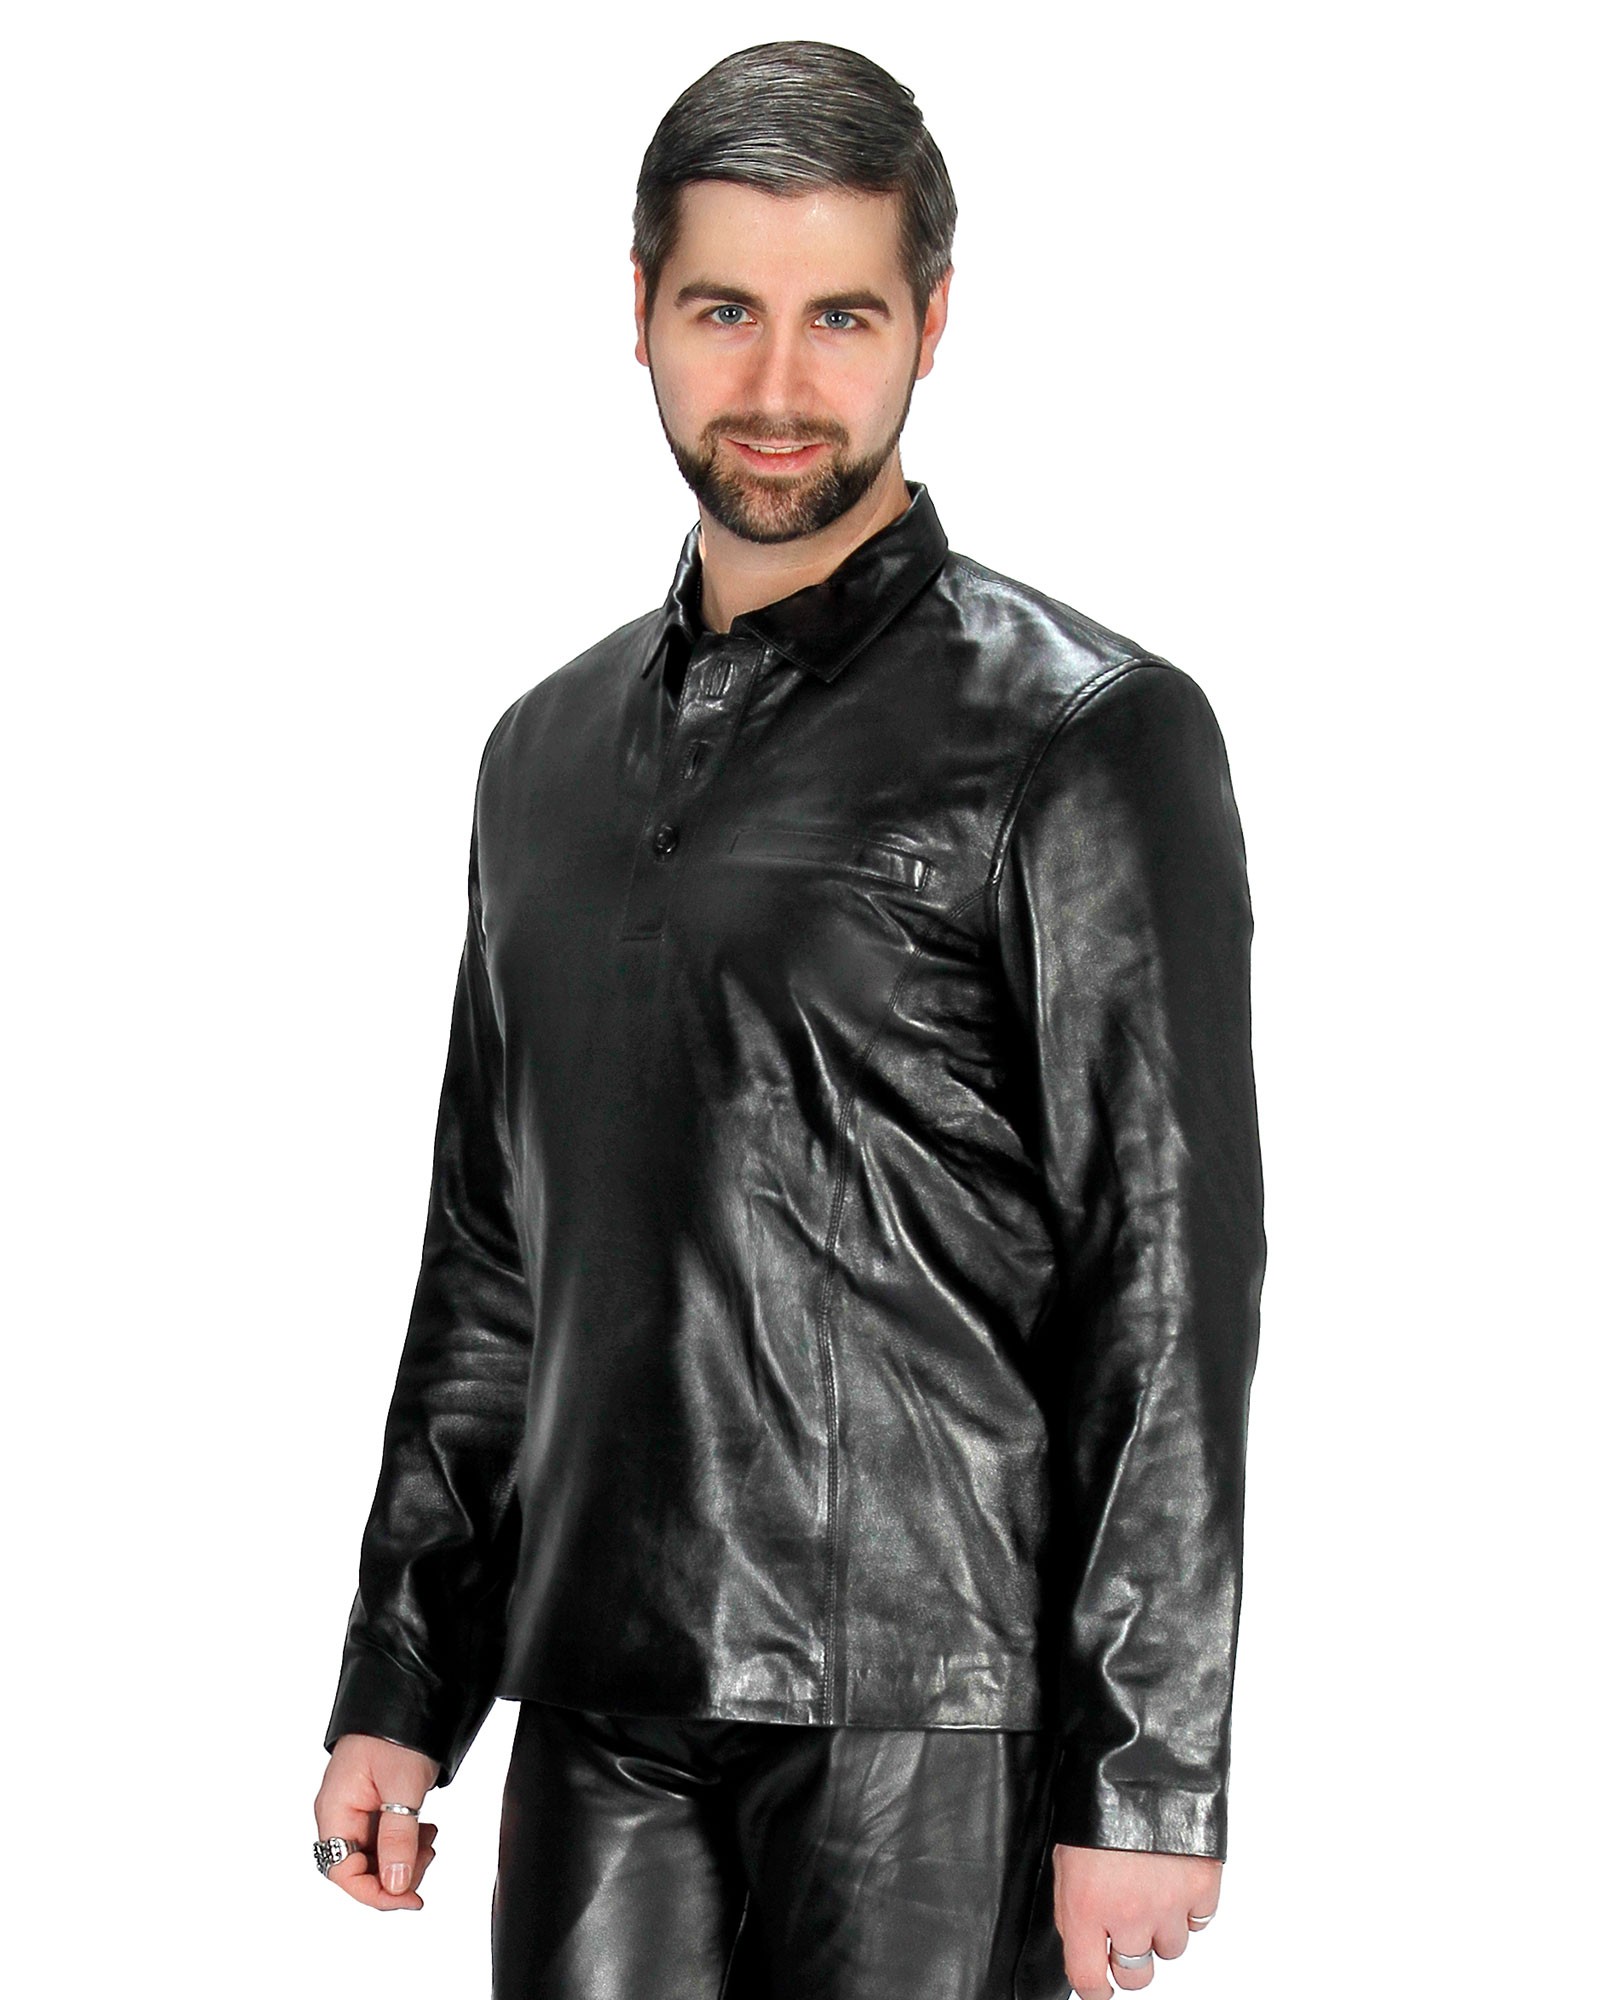 Leather polo shirt Oliver black men\'s arm Bitte shirt Größe wählen Größe S Genuine nappa leather (Select) long